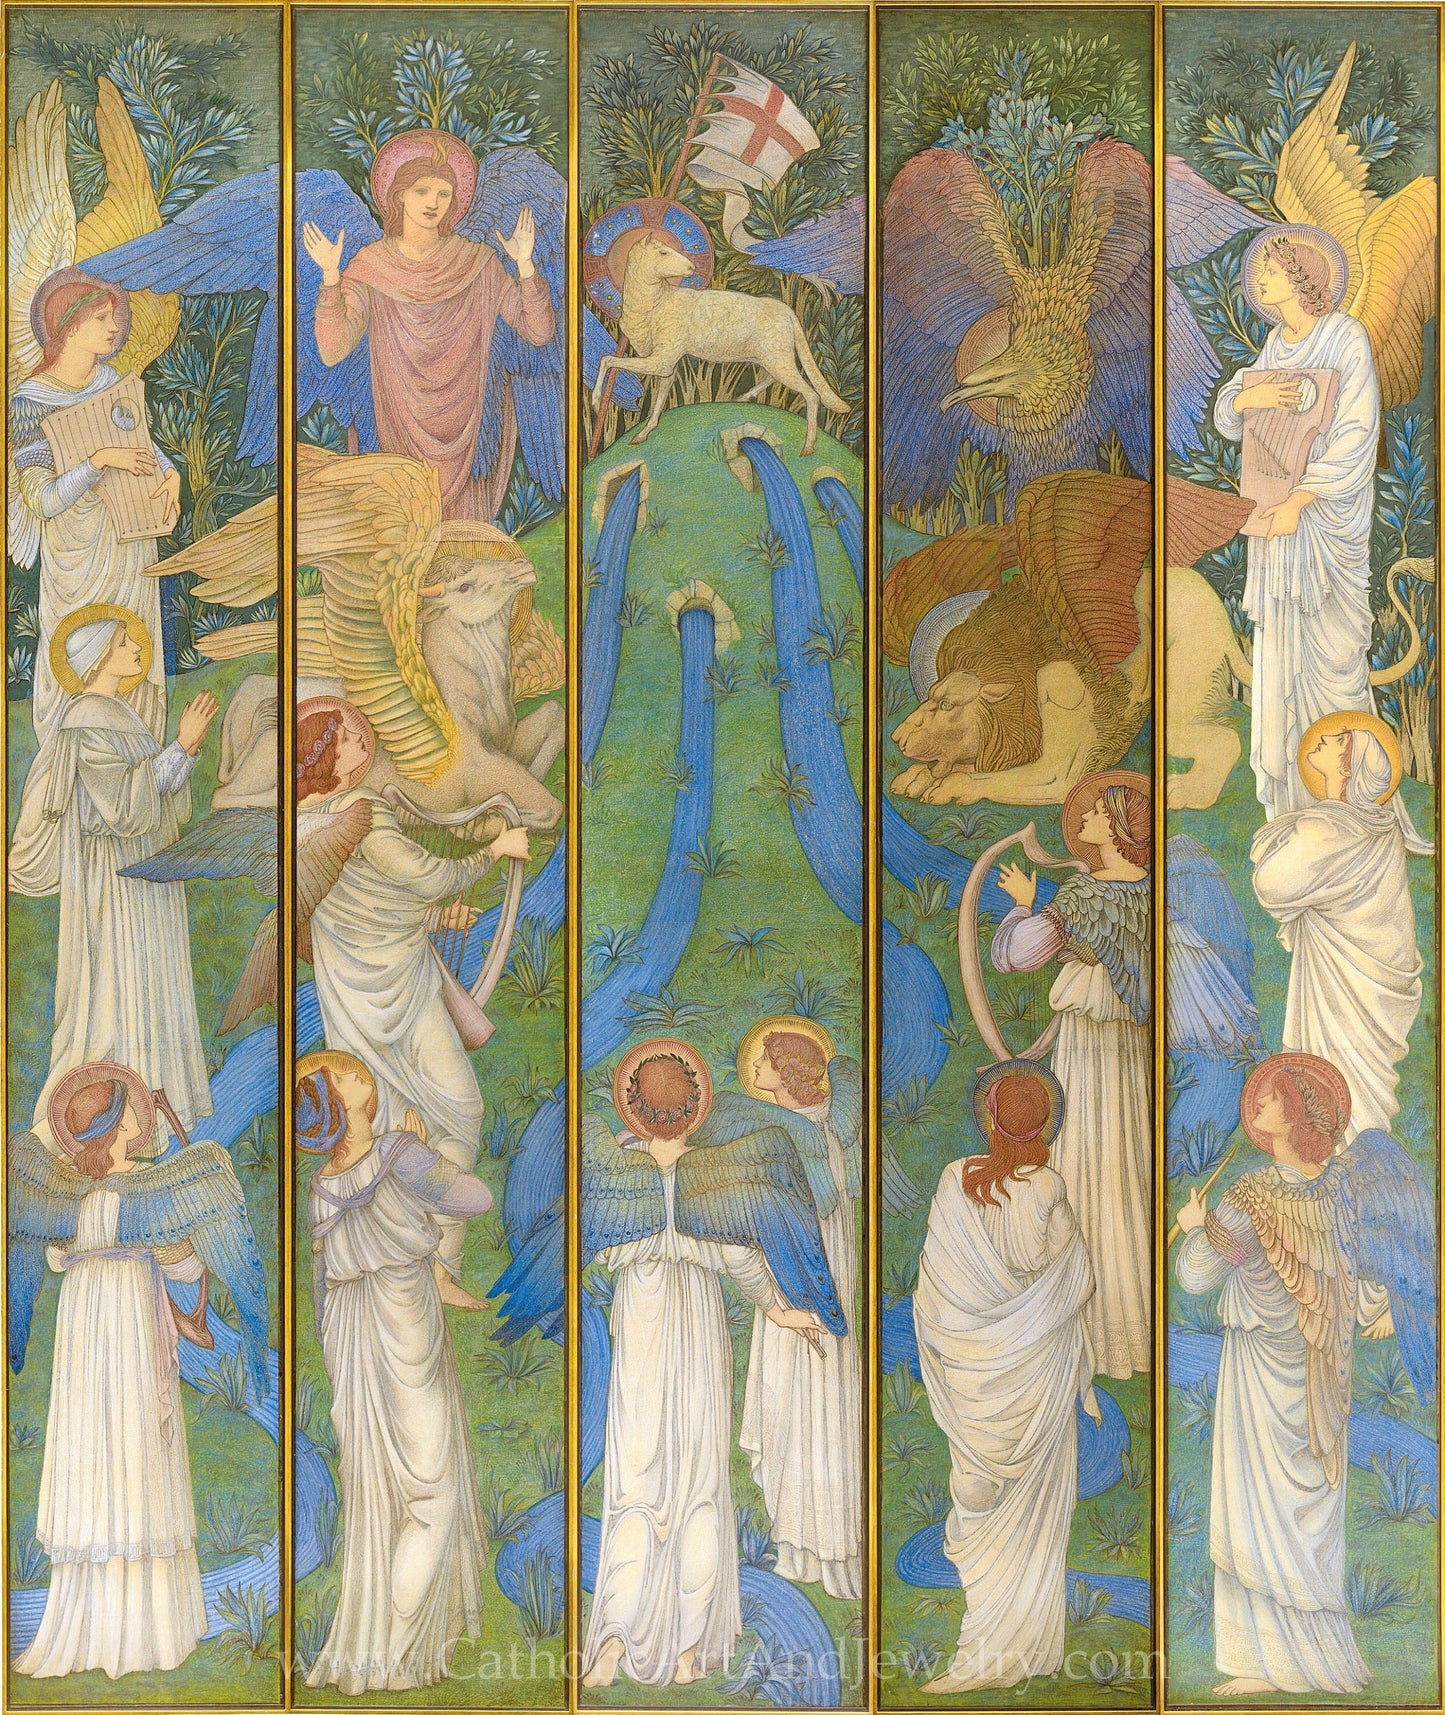 New! Paradise, with the Worship of the Holy Lamb – Edward Burne-Jones – Beautiful Catholic Artwork – Archival Quality